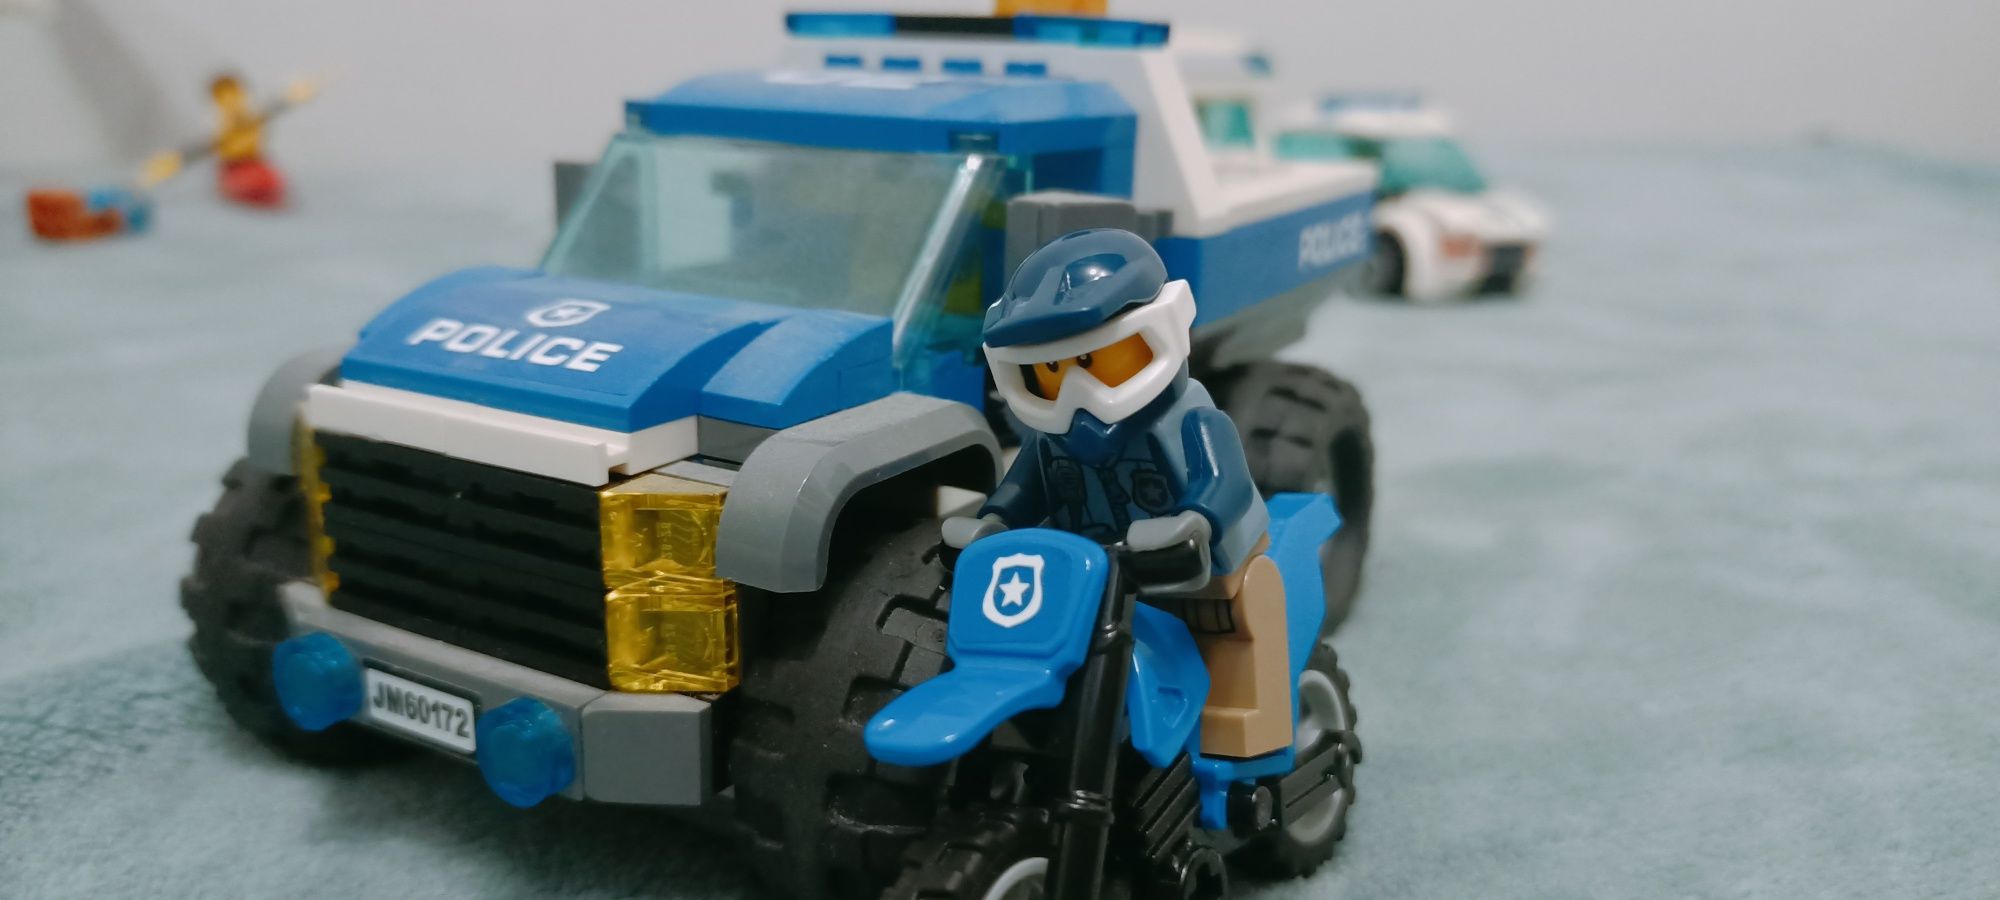 Лего полицеское погоня оригинал!